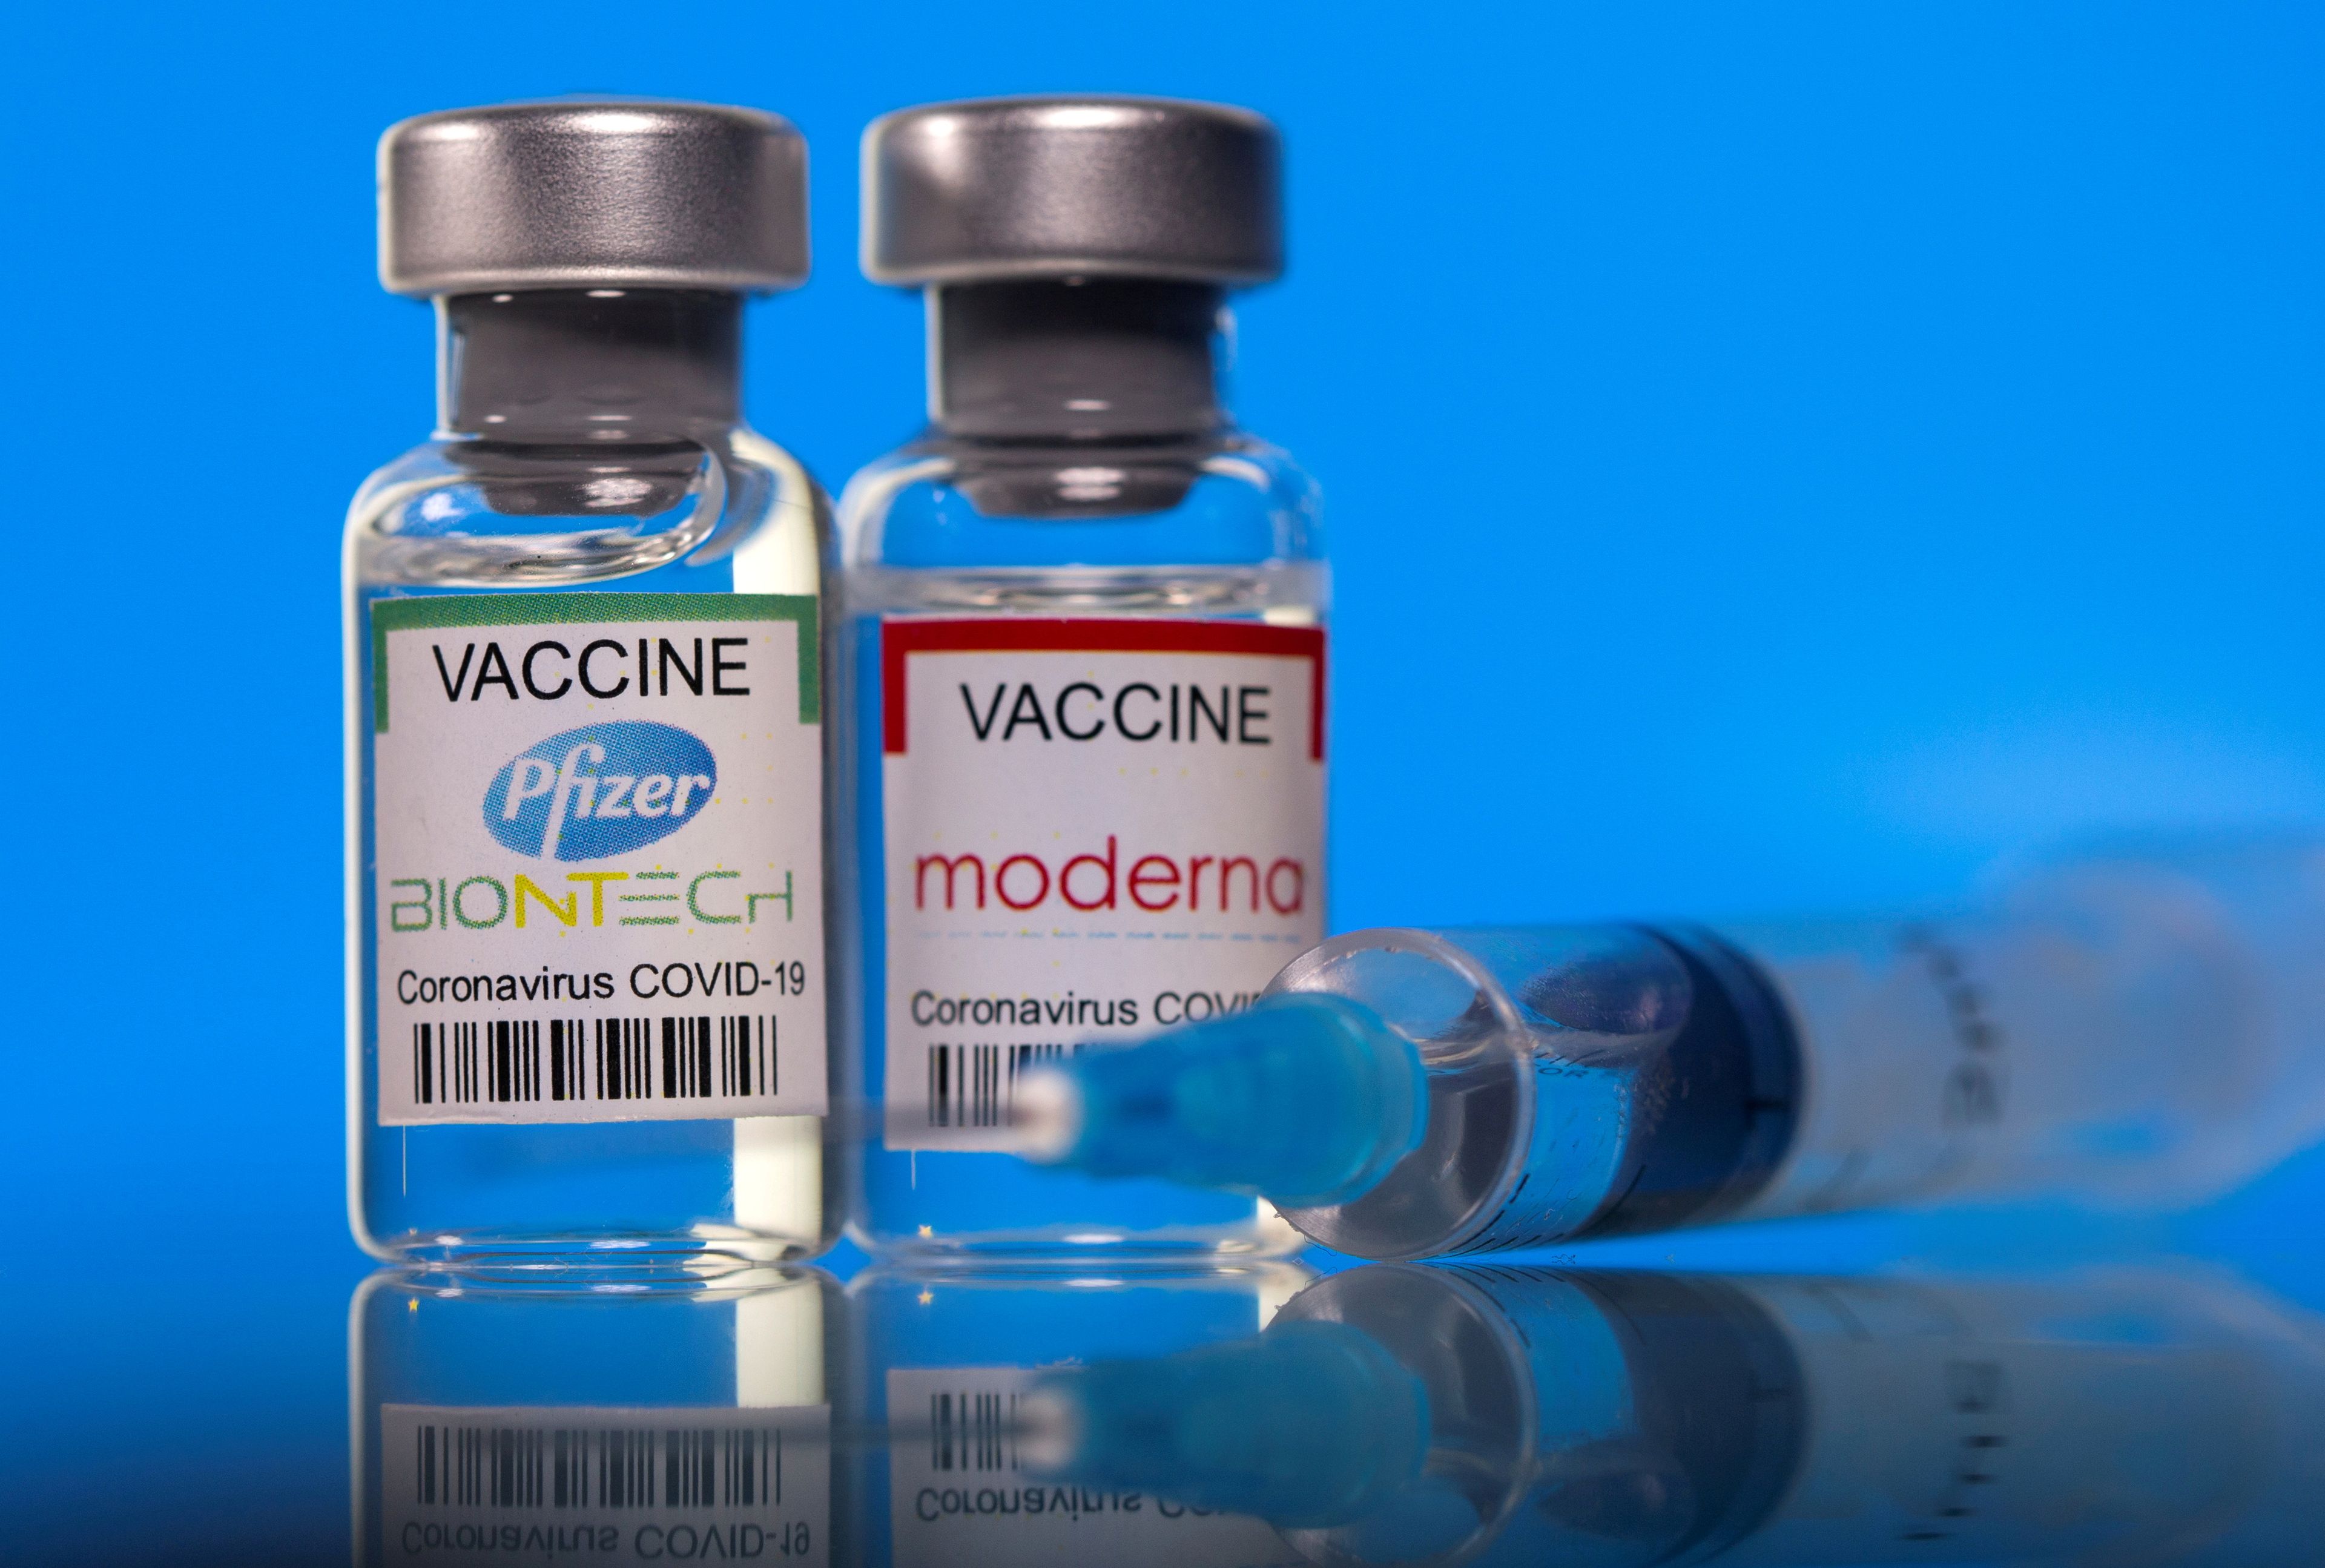 La FDA incluye una advertencia sobre el riesgo "muy leve" de miocarditis y pericarditis con las vacunas de Pfizer y Moderna